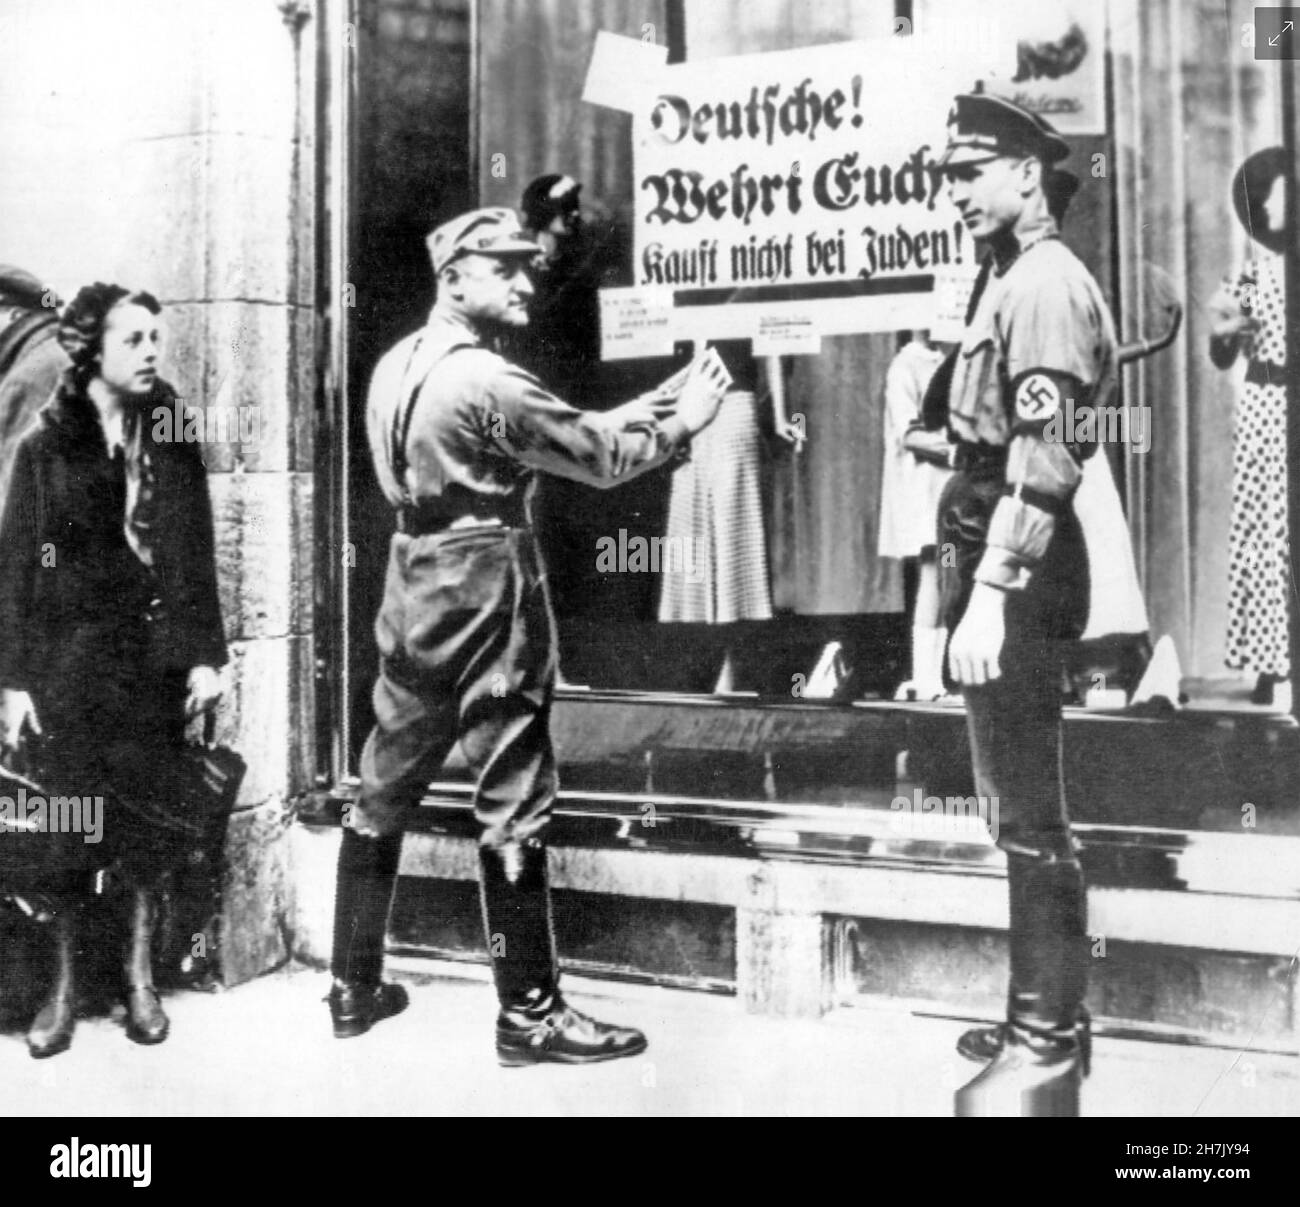 KRISTALLNACHT ein SS-Soldat, der im November 1938 eine Nachricht an das Fenster eines Ladens in der Friedrichstraße in Berlin postete. Er sagte den Deutschen, dass sie keine jüdischen Waren kaufen sollten. Der Mann rechts scheint einen Keulenfuß zu haben. Stockfoto